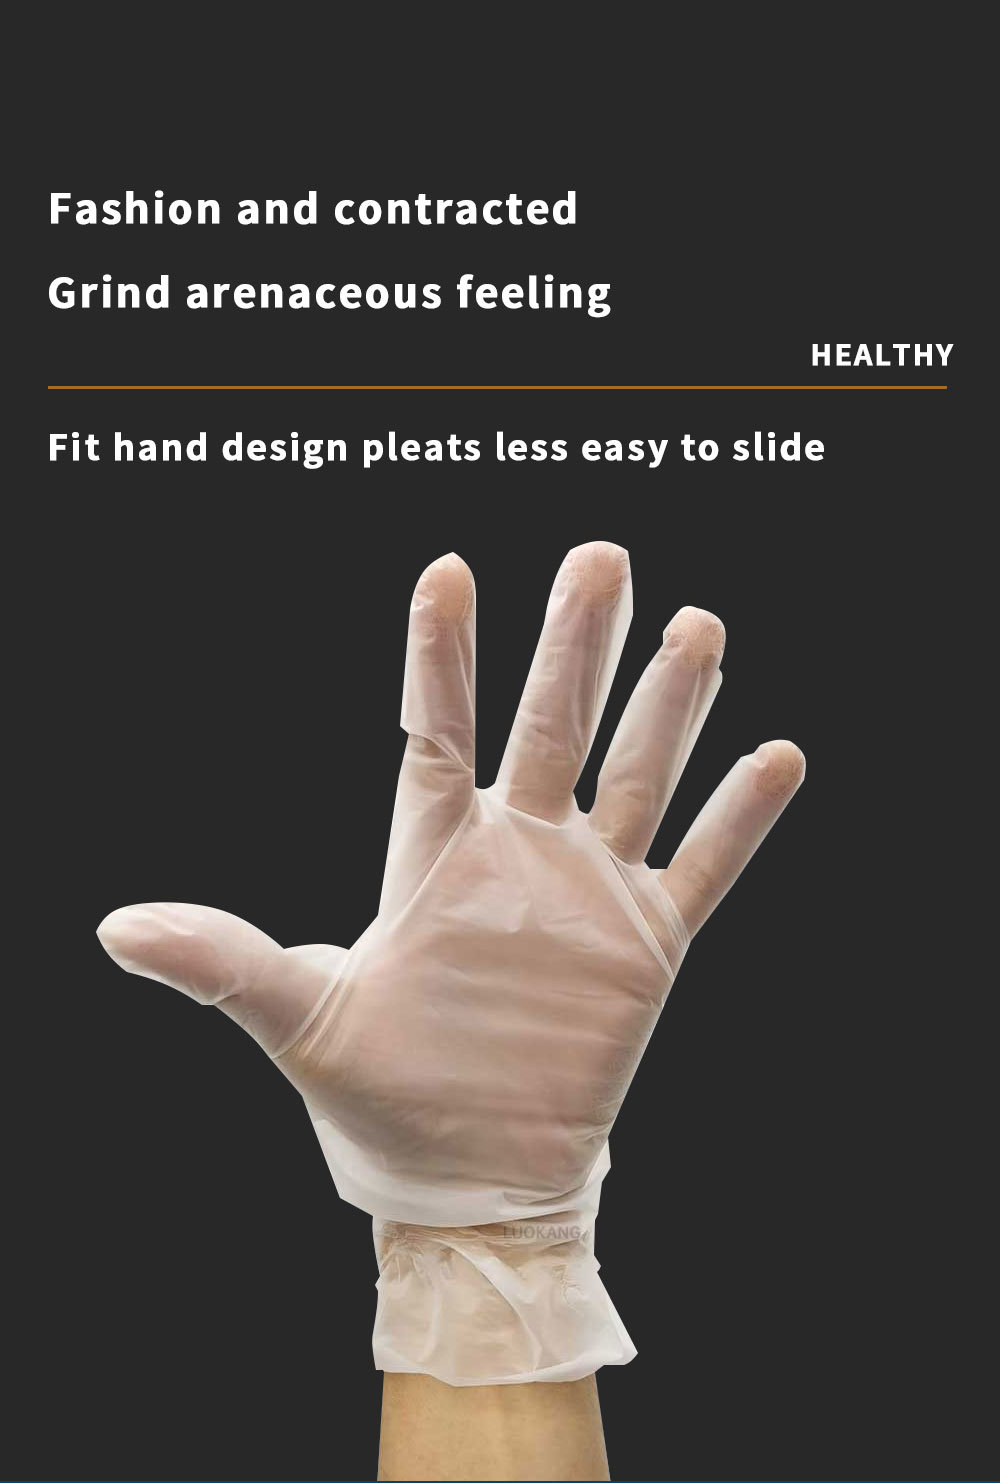 TPE Gloves-Disposable Household TPE Examination Gloves Food Grade Film Sanitary Gloves Dinner Gloves